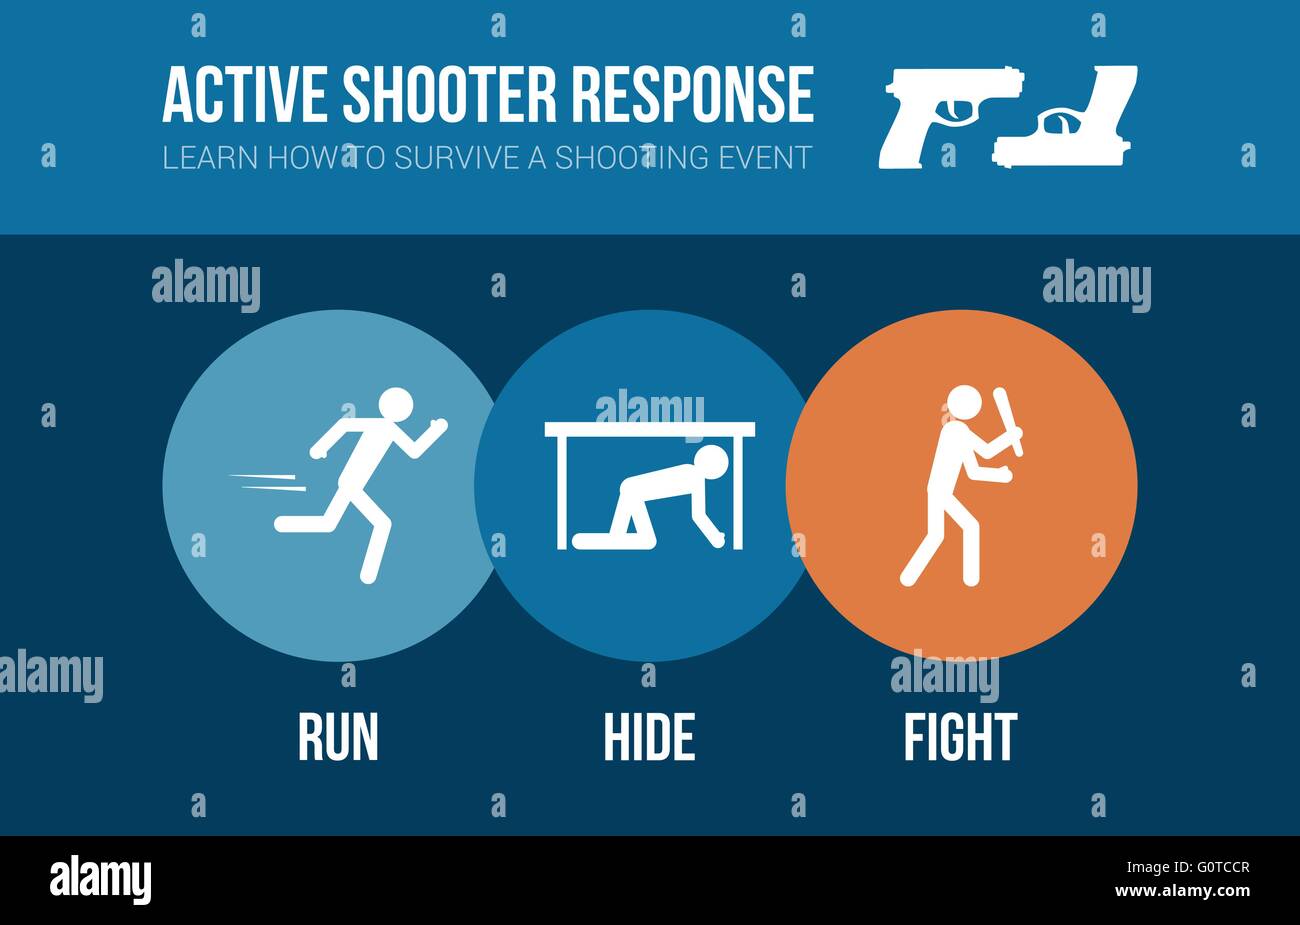 Active shooter risposta procedura di sicurezza banner con stick figure: esegui, nascondere o lotta Illustrazione Vettoriale